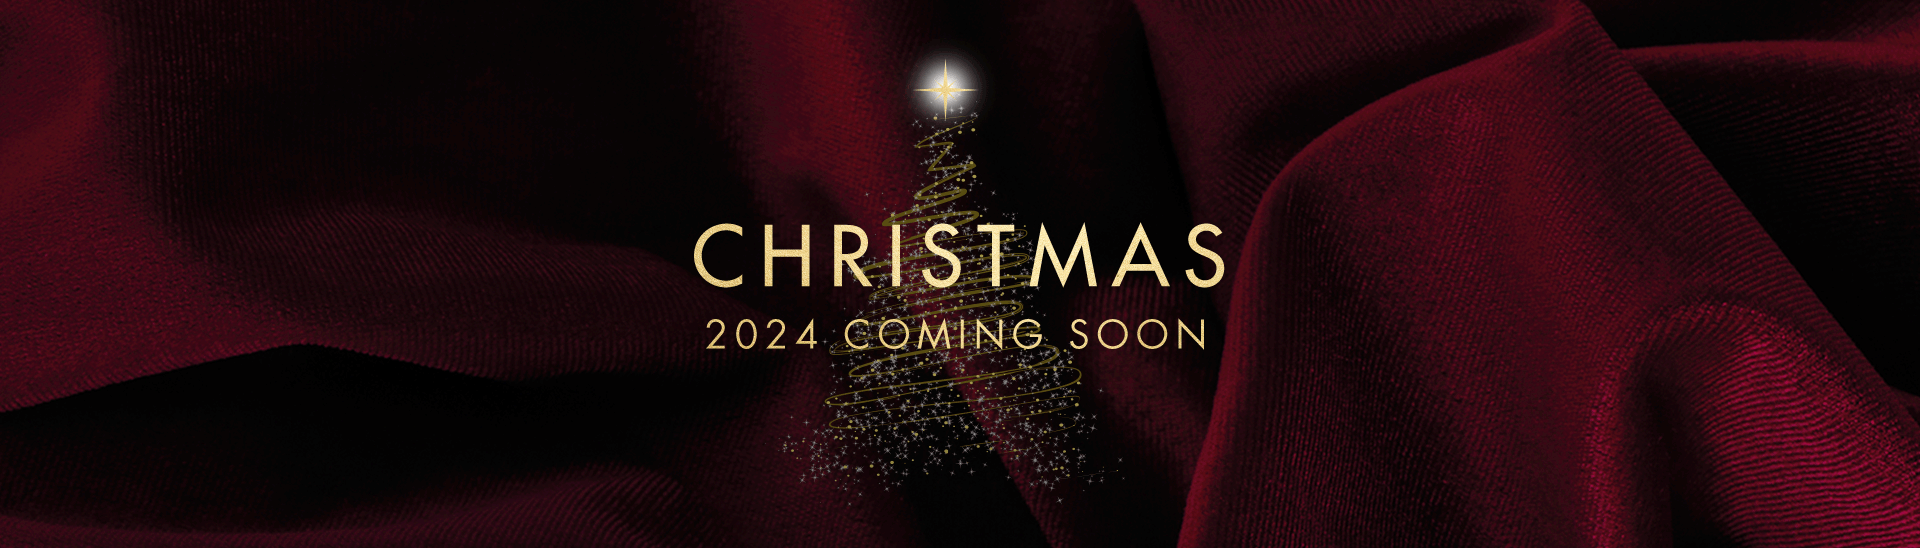 Christmas 2024 at Basildon